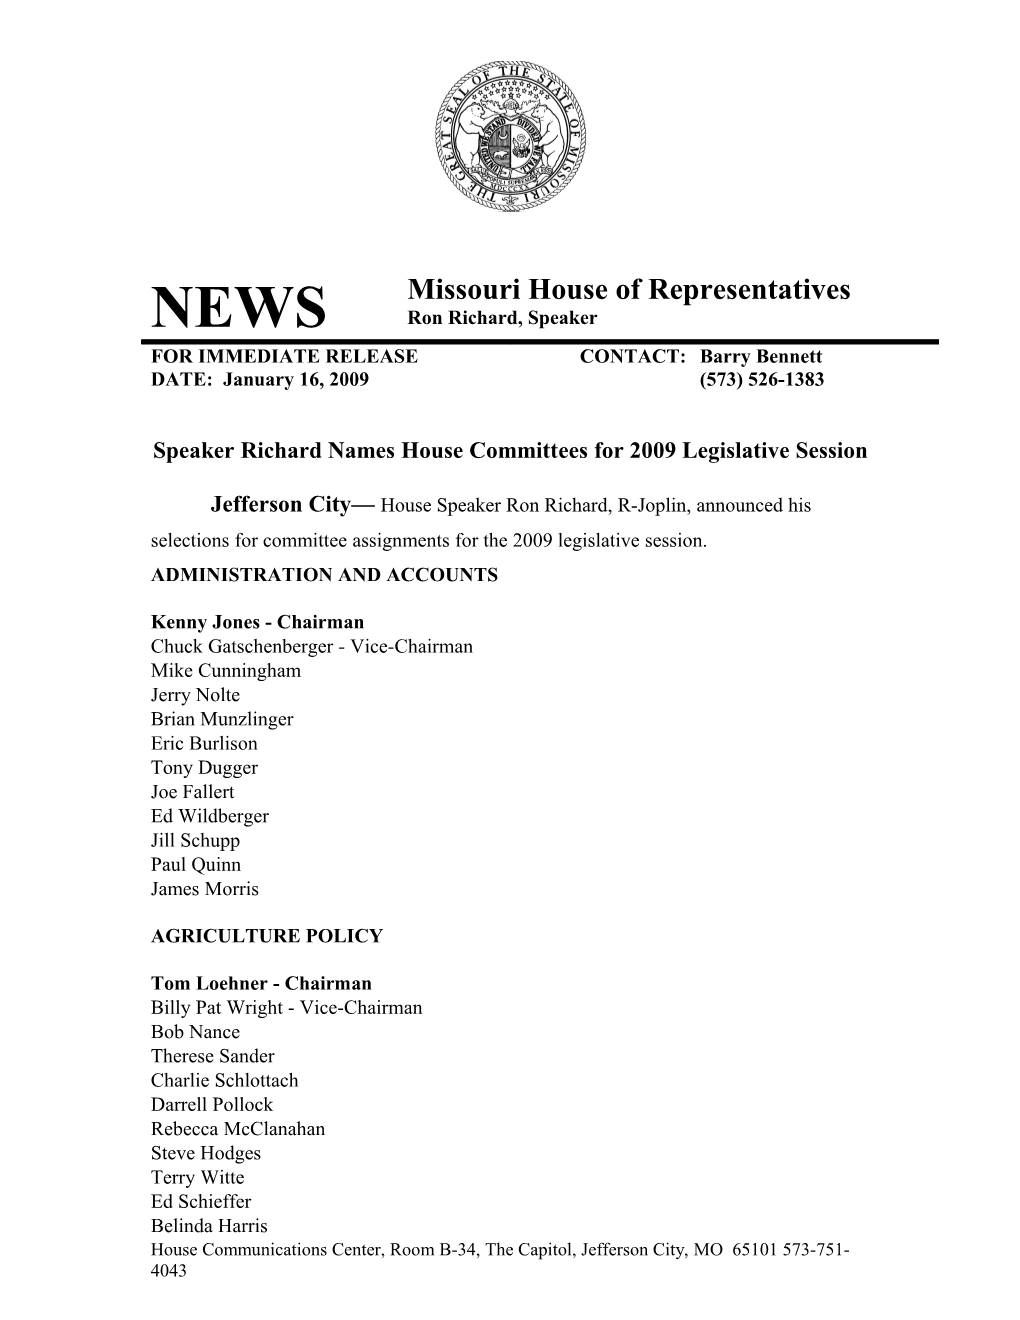 Speaker Richard Names House Committees for 2009 Legislative Session